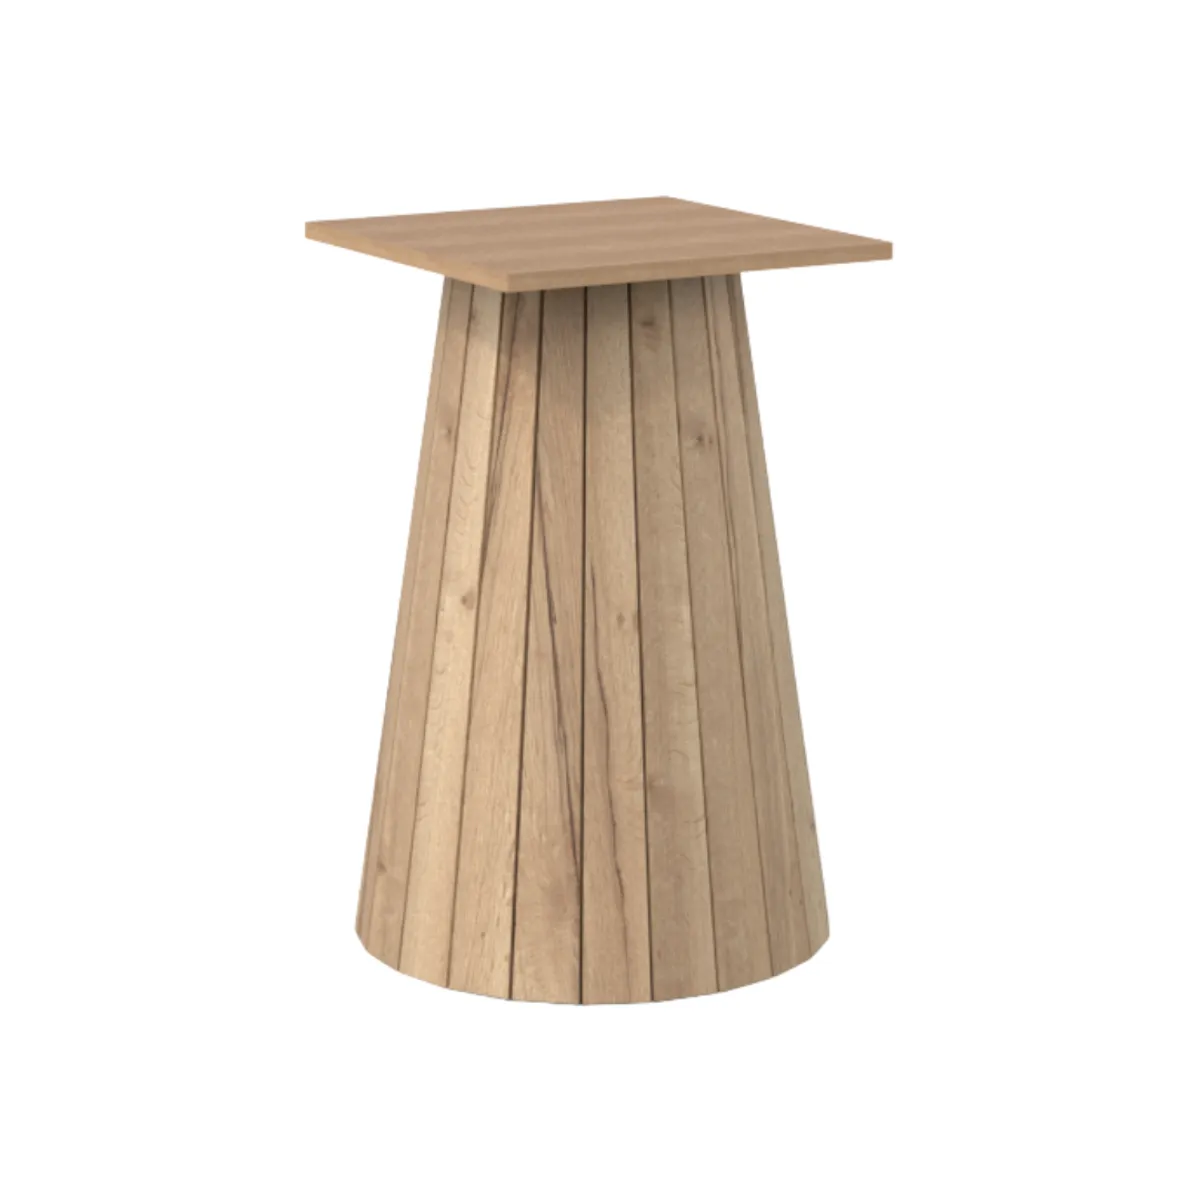 Bespoke metropole wooden table 5